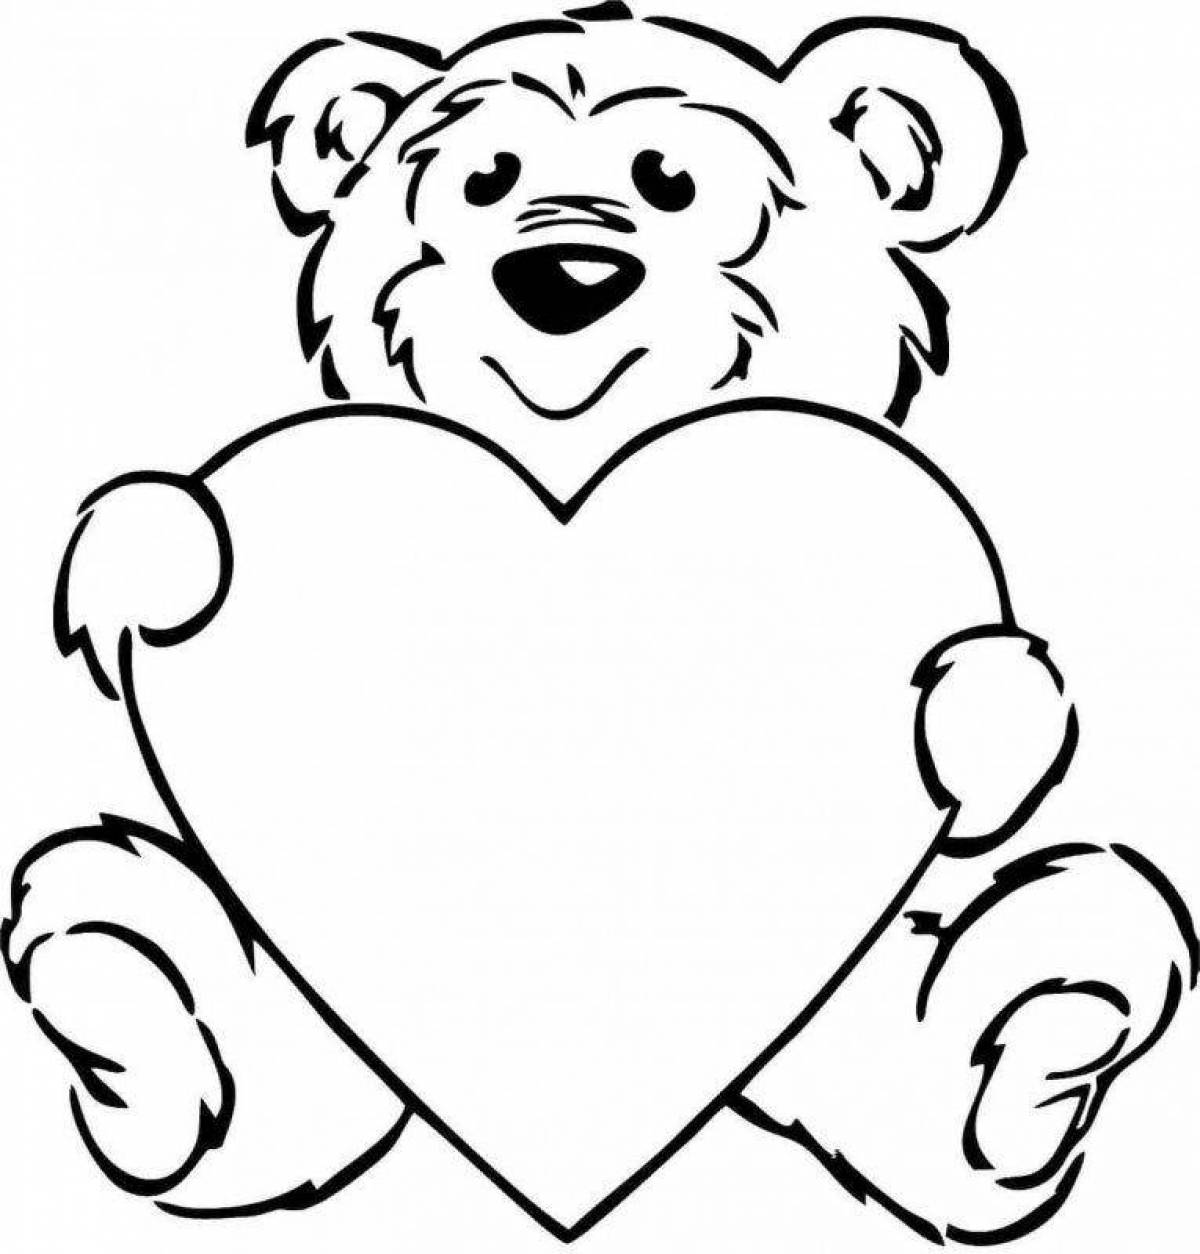 Bear with a heart #6